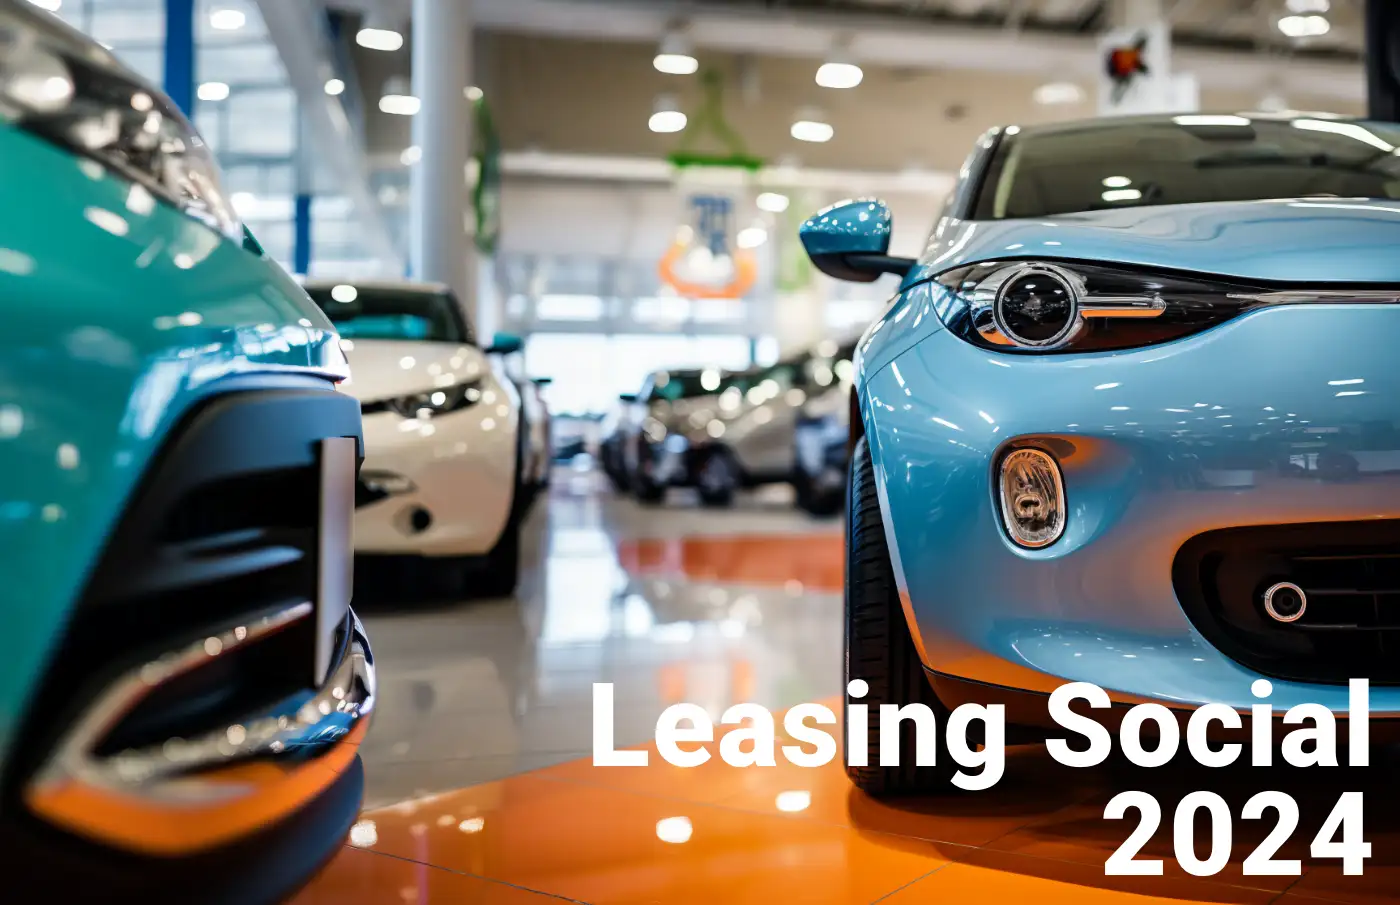 Leasing social 2024 pour 100 euros par mois pour une voiture électrique.